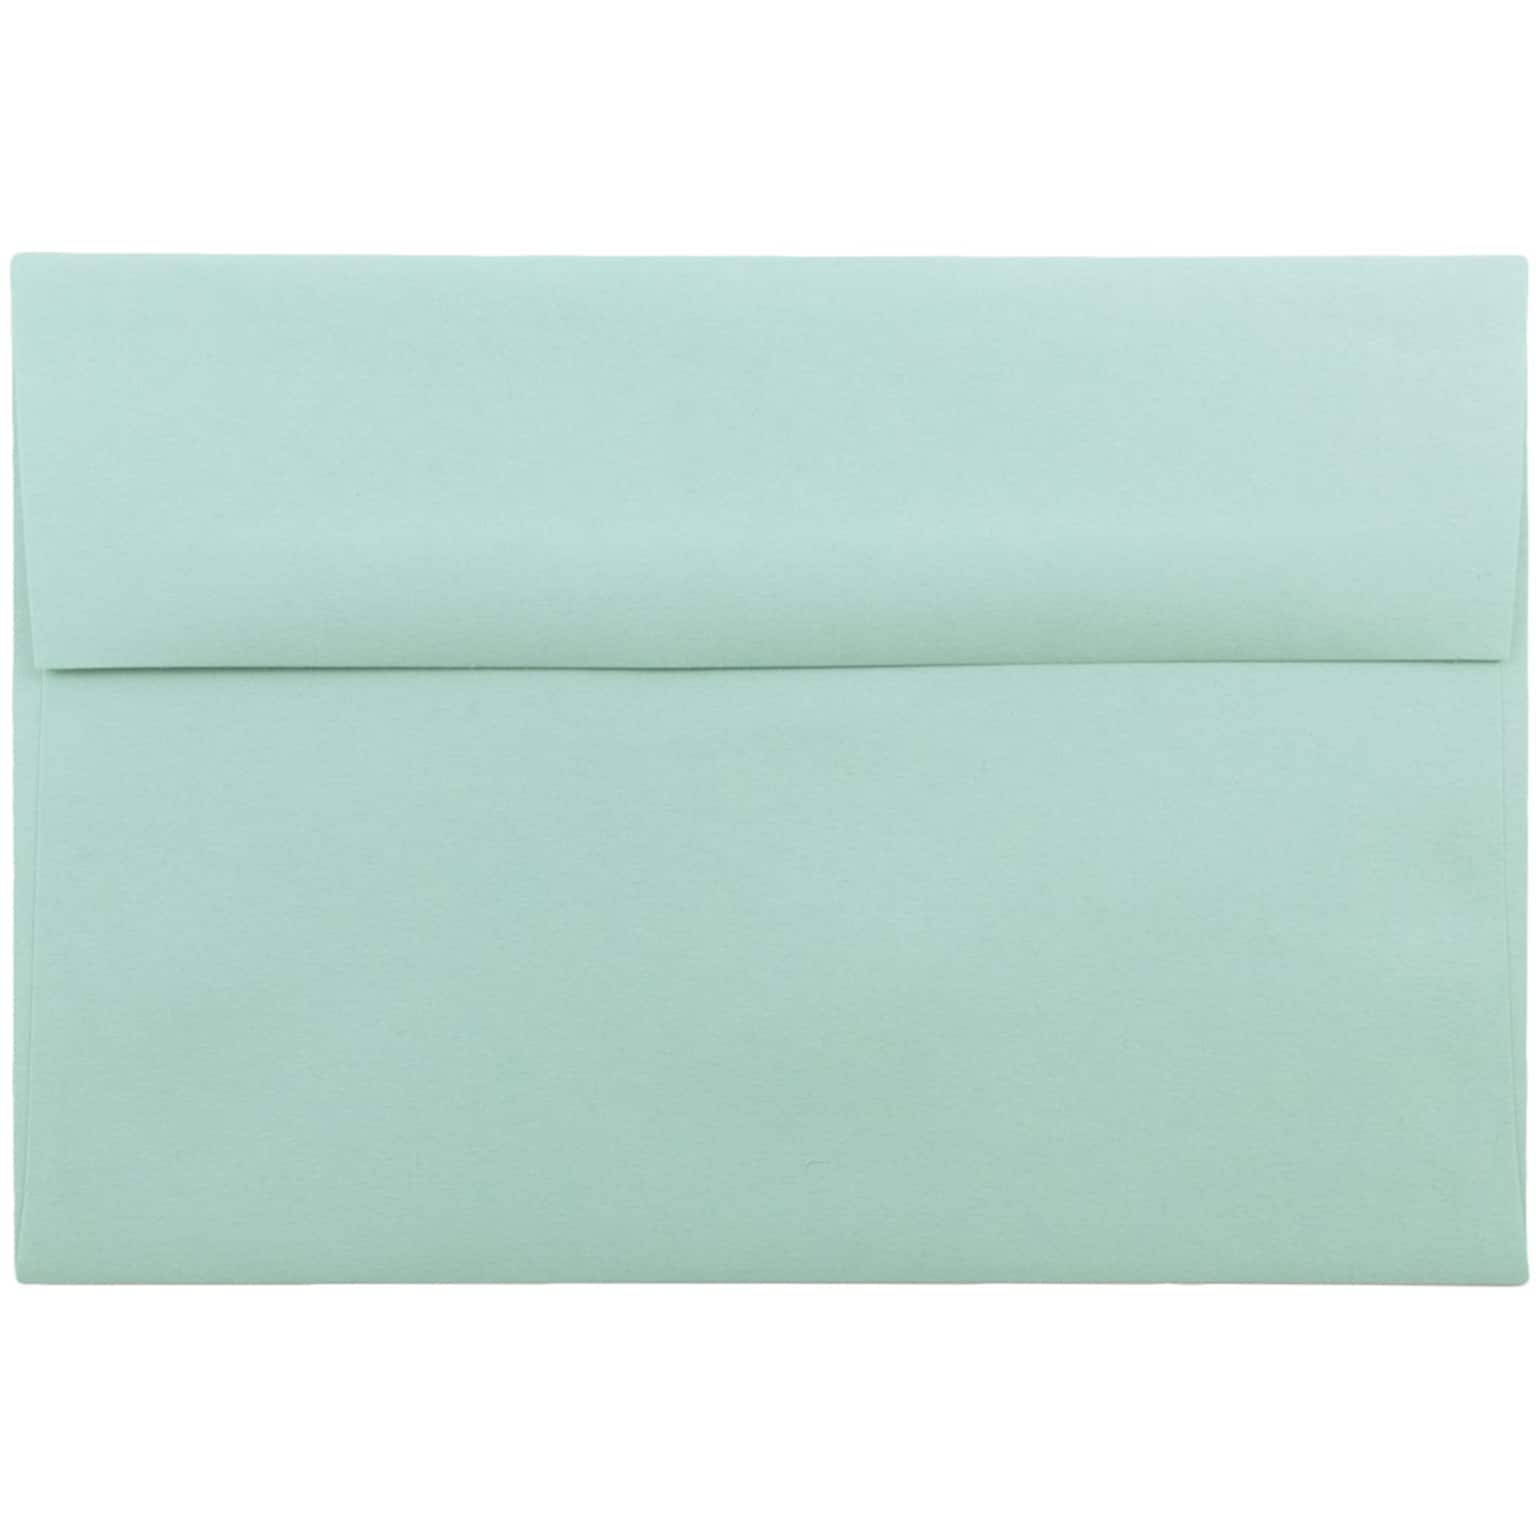 JAM Paper A8 Invitation Envelopes, 5.5 x 8.125, Aqua Blue, 25/Pack (1523988)